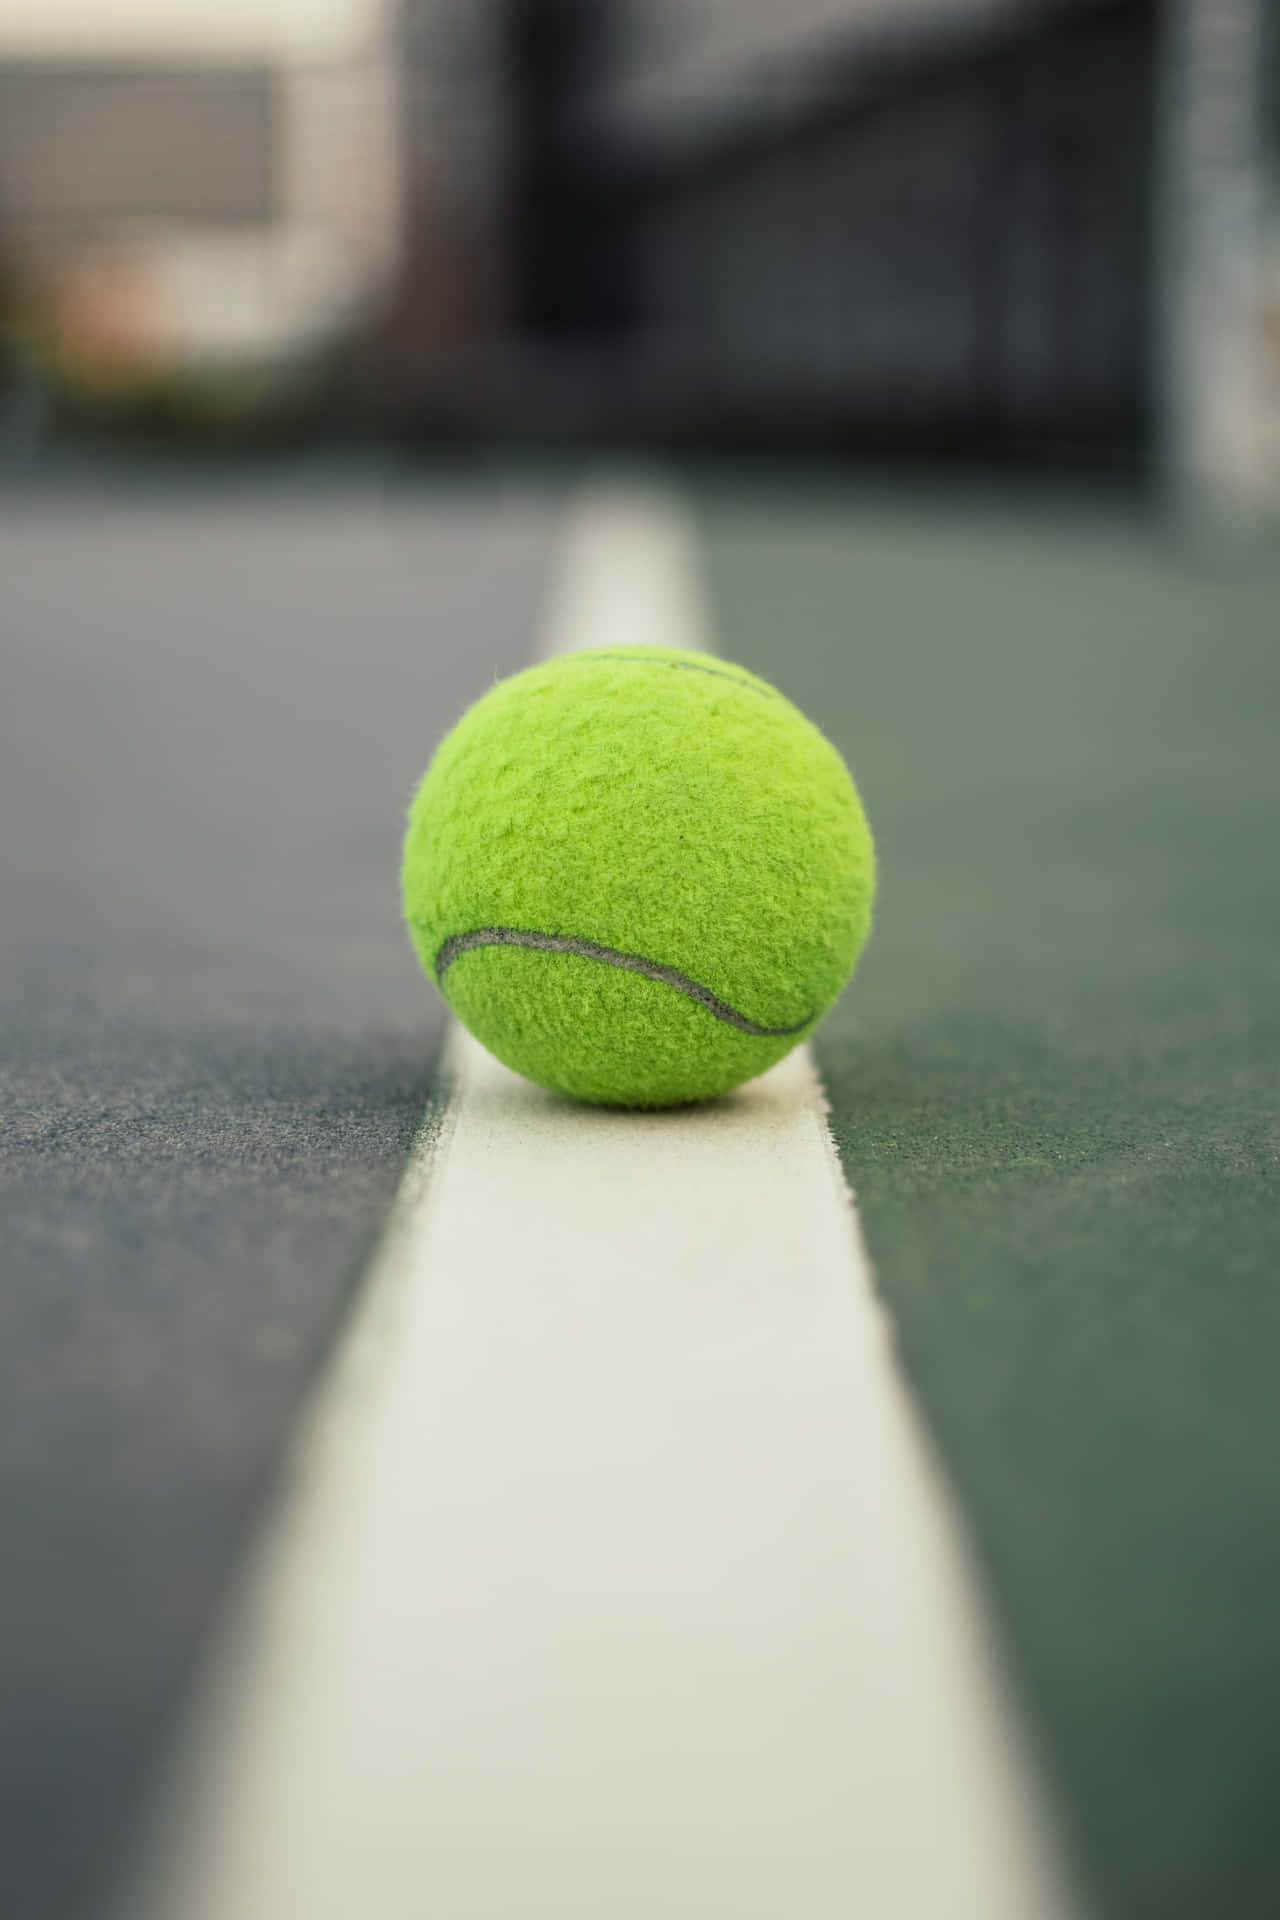 Hastighet,skicklighet Och Kraft - De Väsentliga Elementen I En Fantastisk Tennis Match Wallpaper